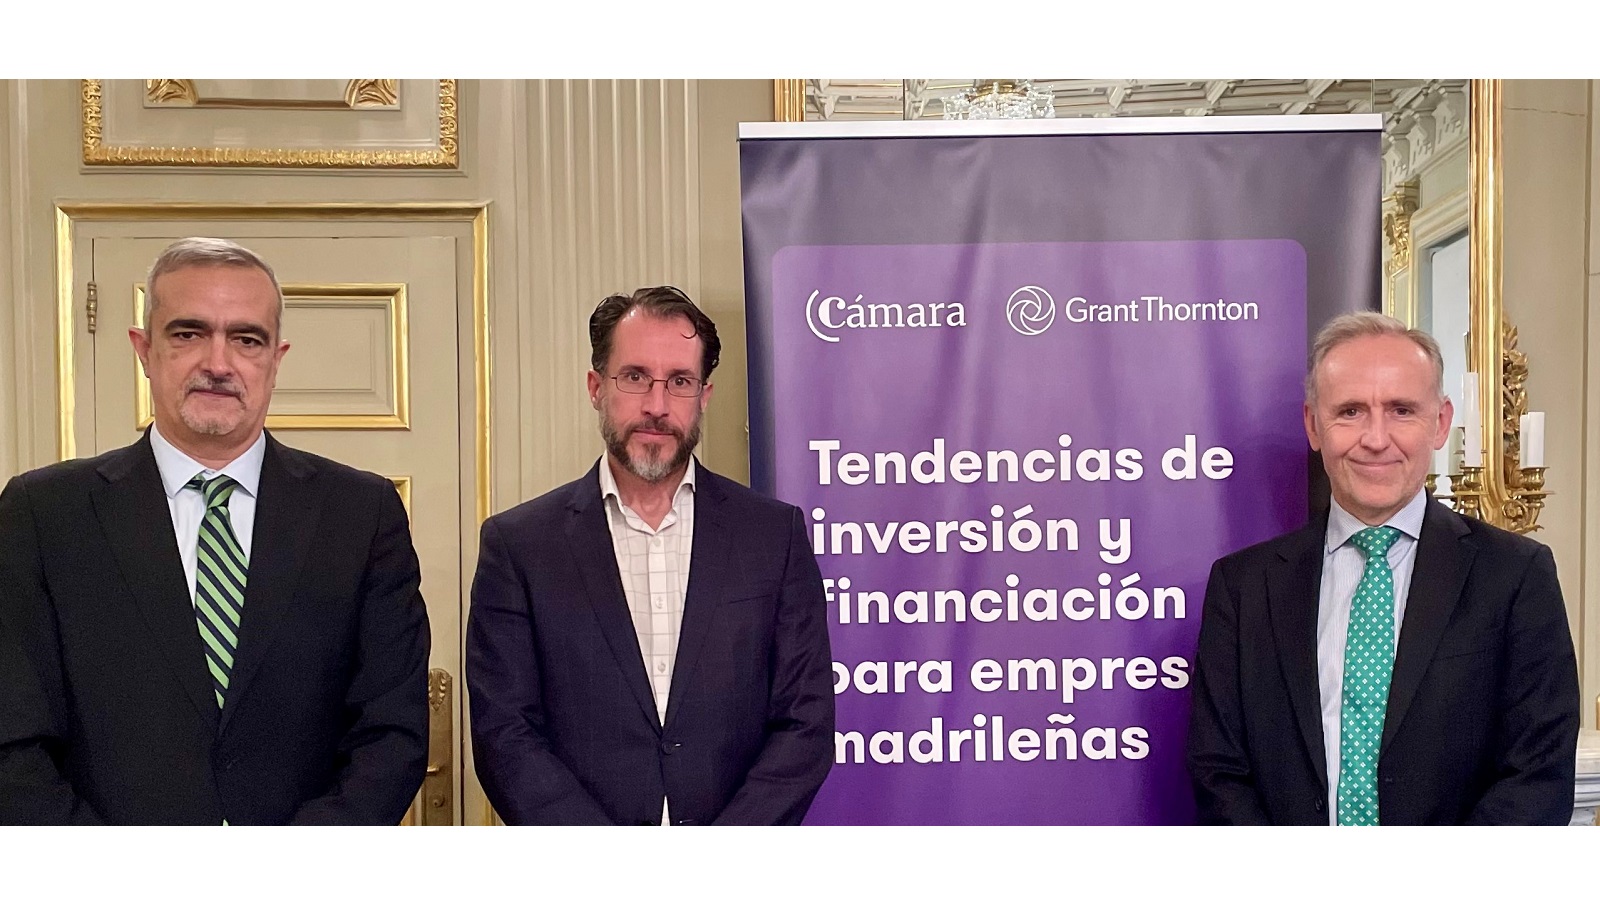 fotografía con representantes de Grant Thornton y Cámara de Comercio de Madrid